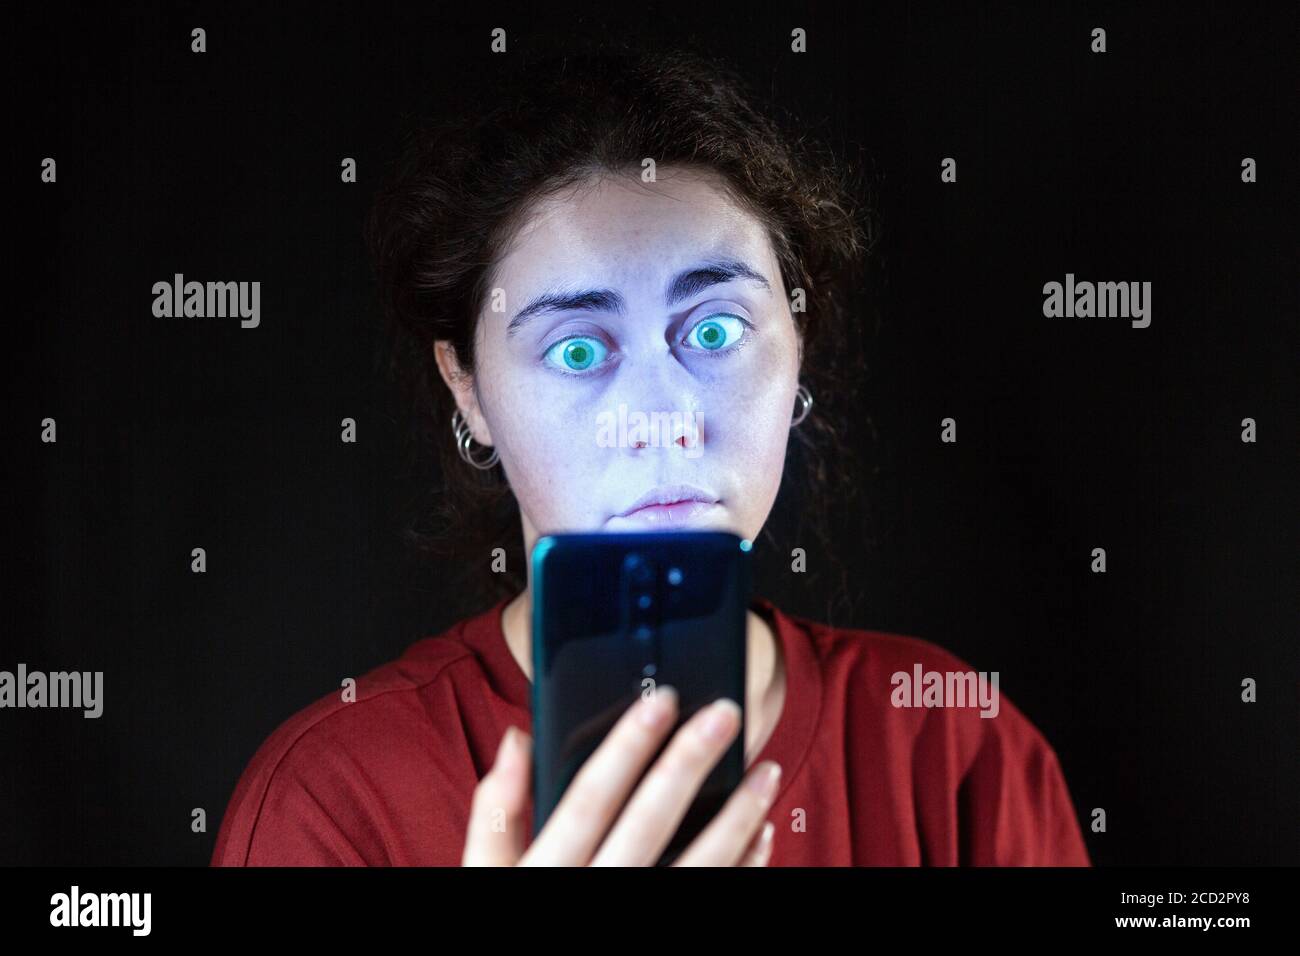 Porträt einer Frau, die ihr Handy wie ein Zombie ansieht. Schwarzer Hintergrund. Speicherplatz kopieren. Das Konzept der Online-sucht. Stockfoto